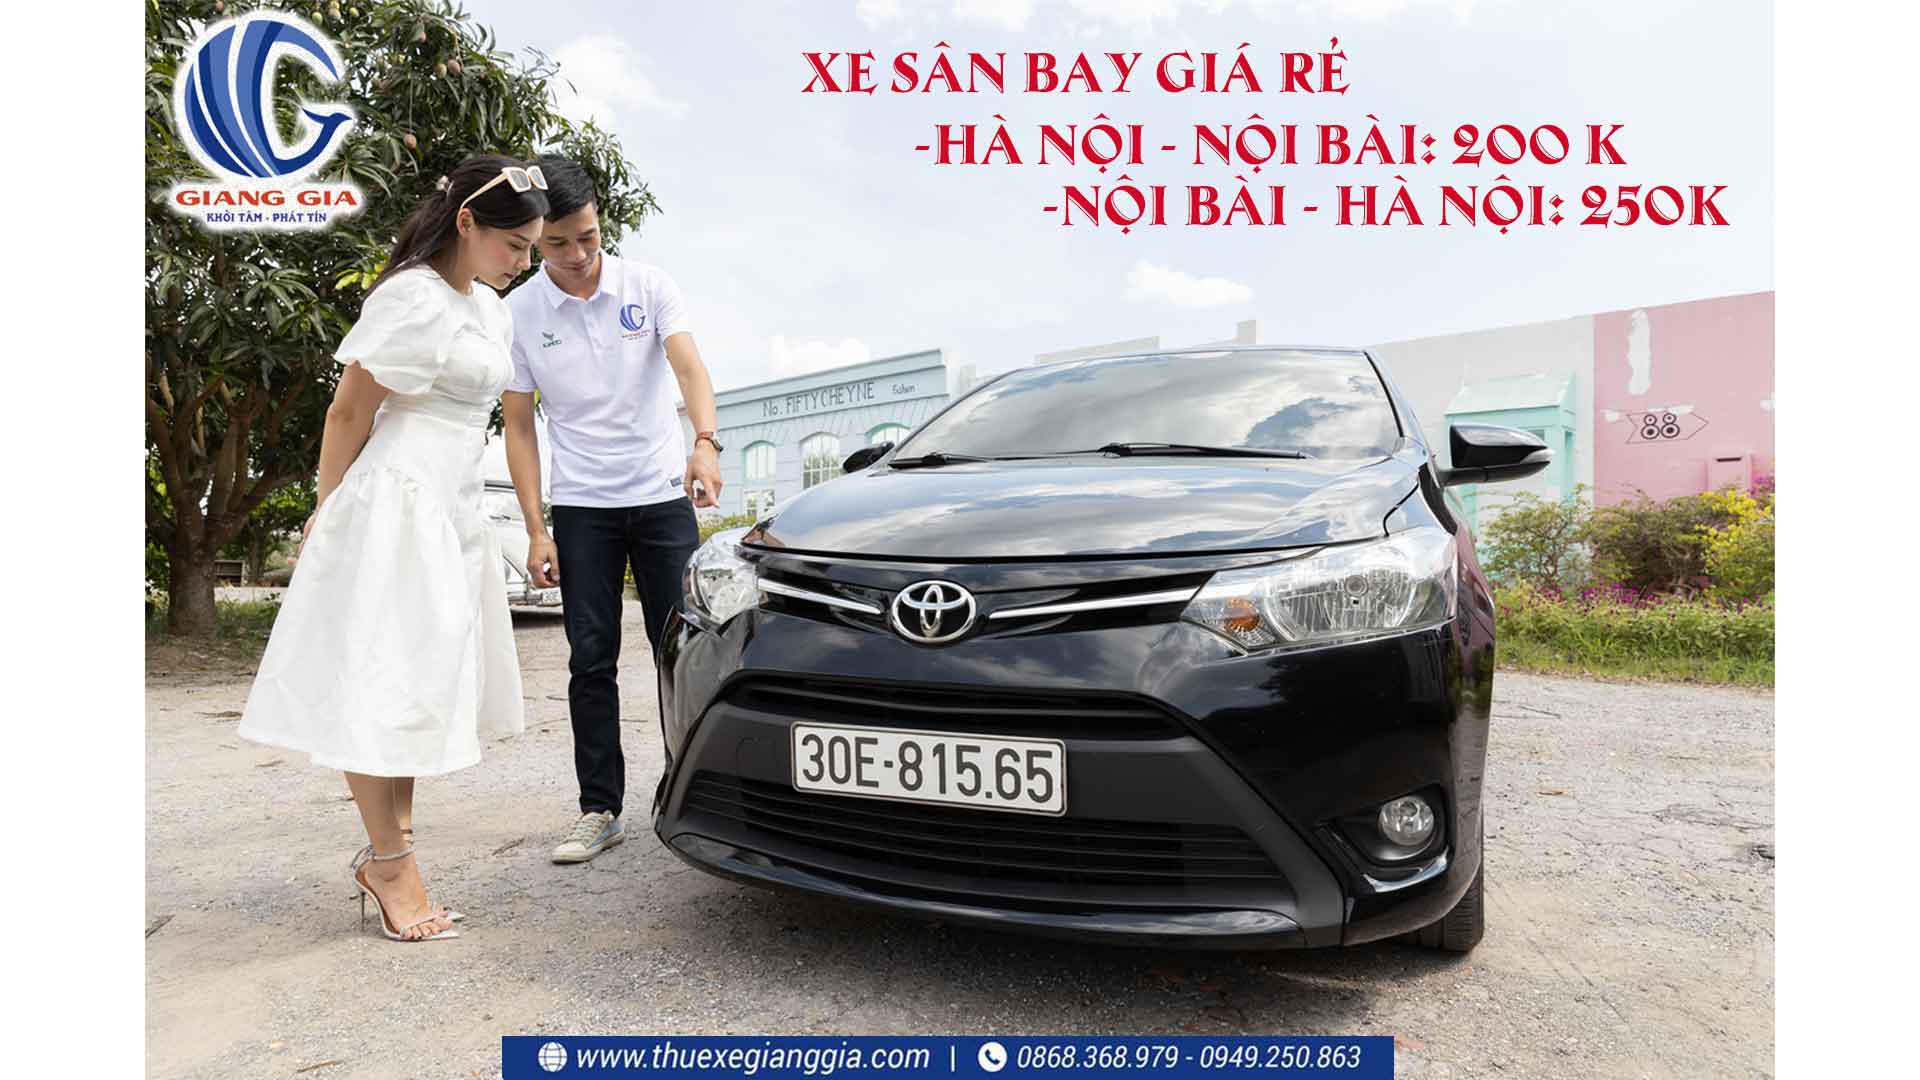 Dịch vụ thuê xe taxi Nội Bài giá rẻ nhất Hà Nội